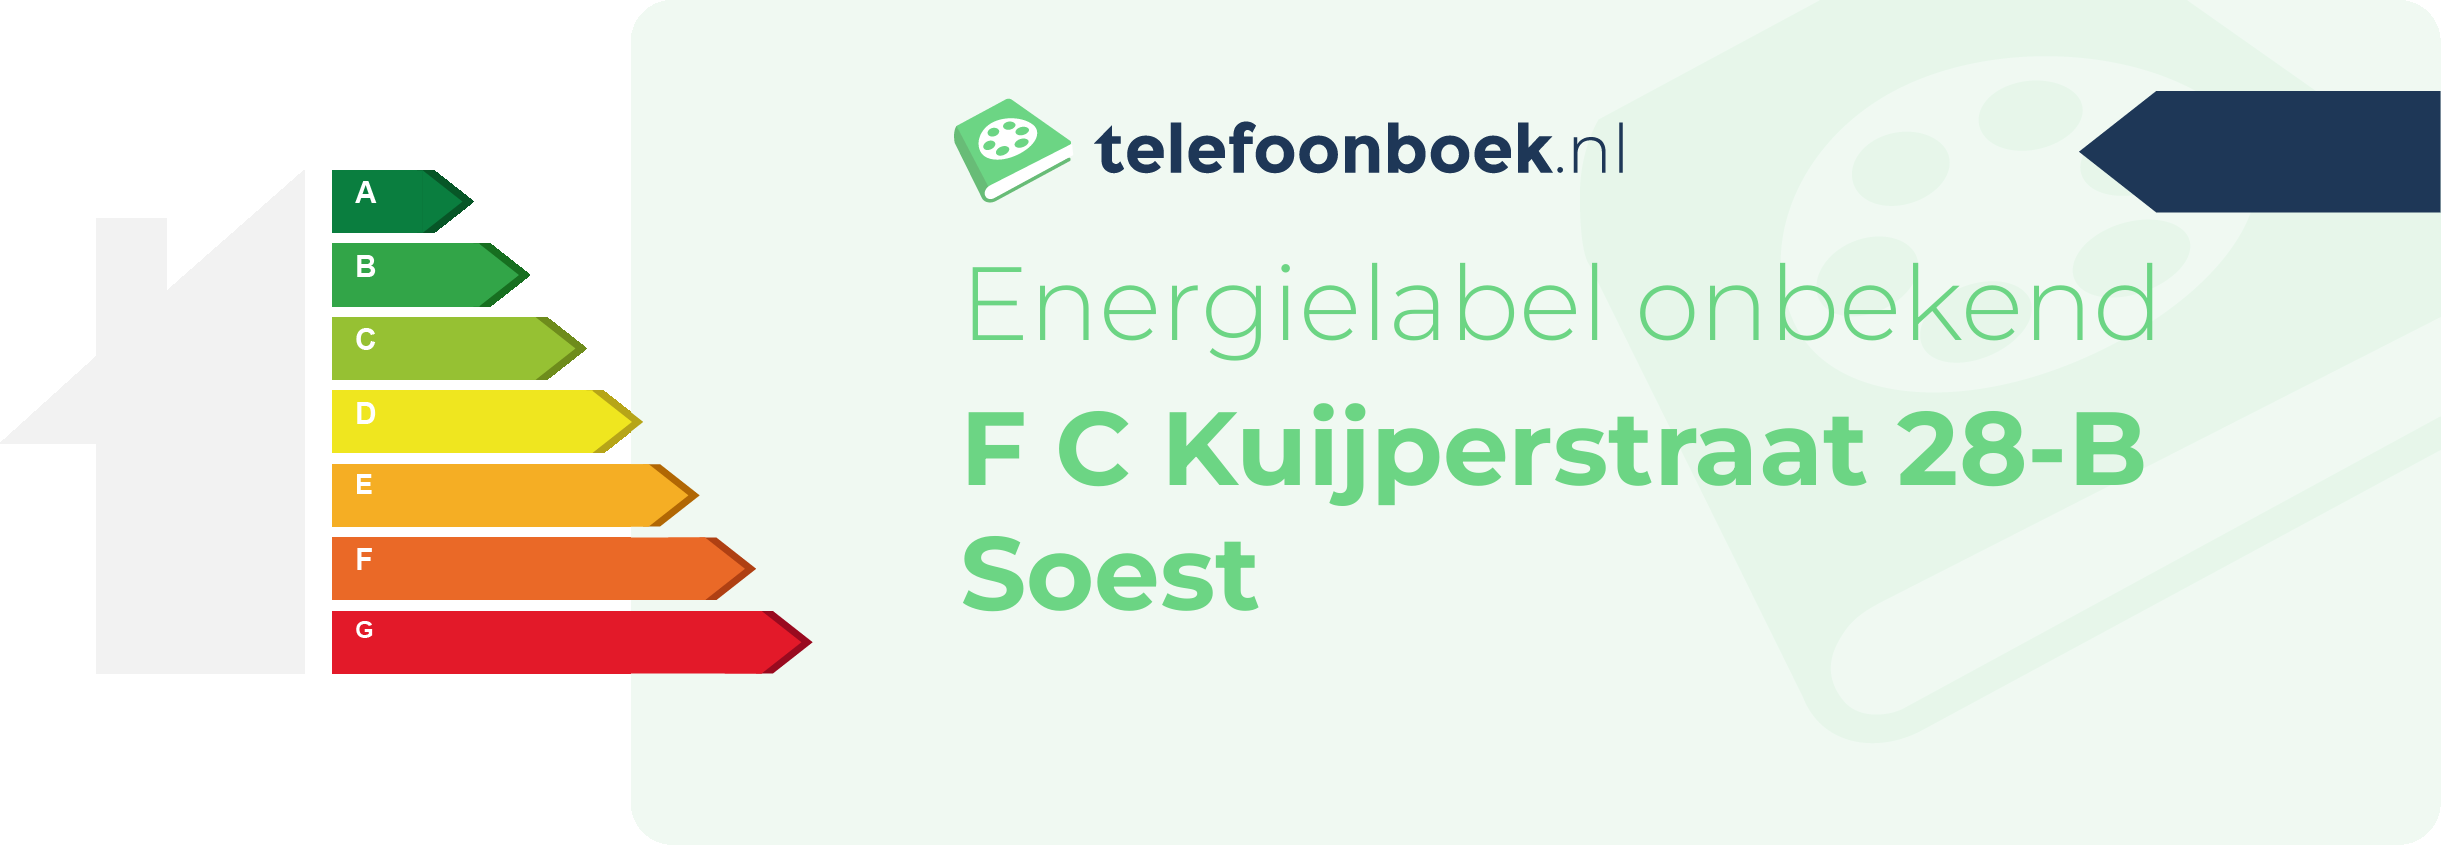 Energielabel F C Kuijperstraat 28-B Soest